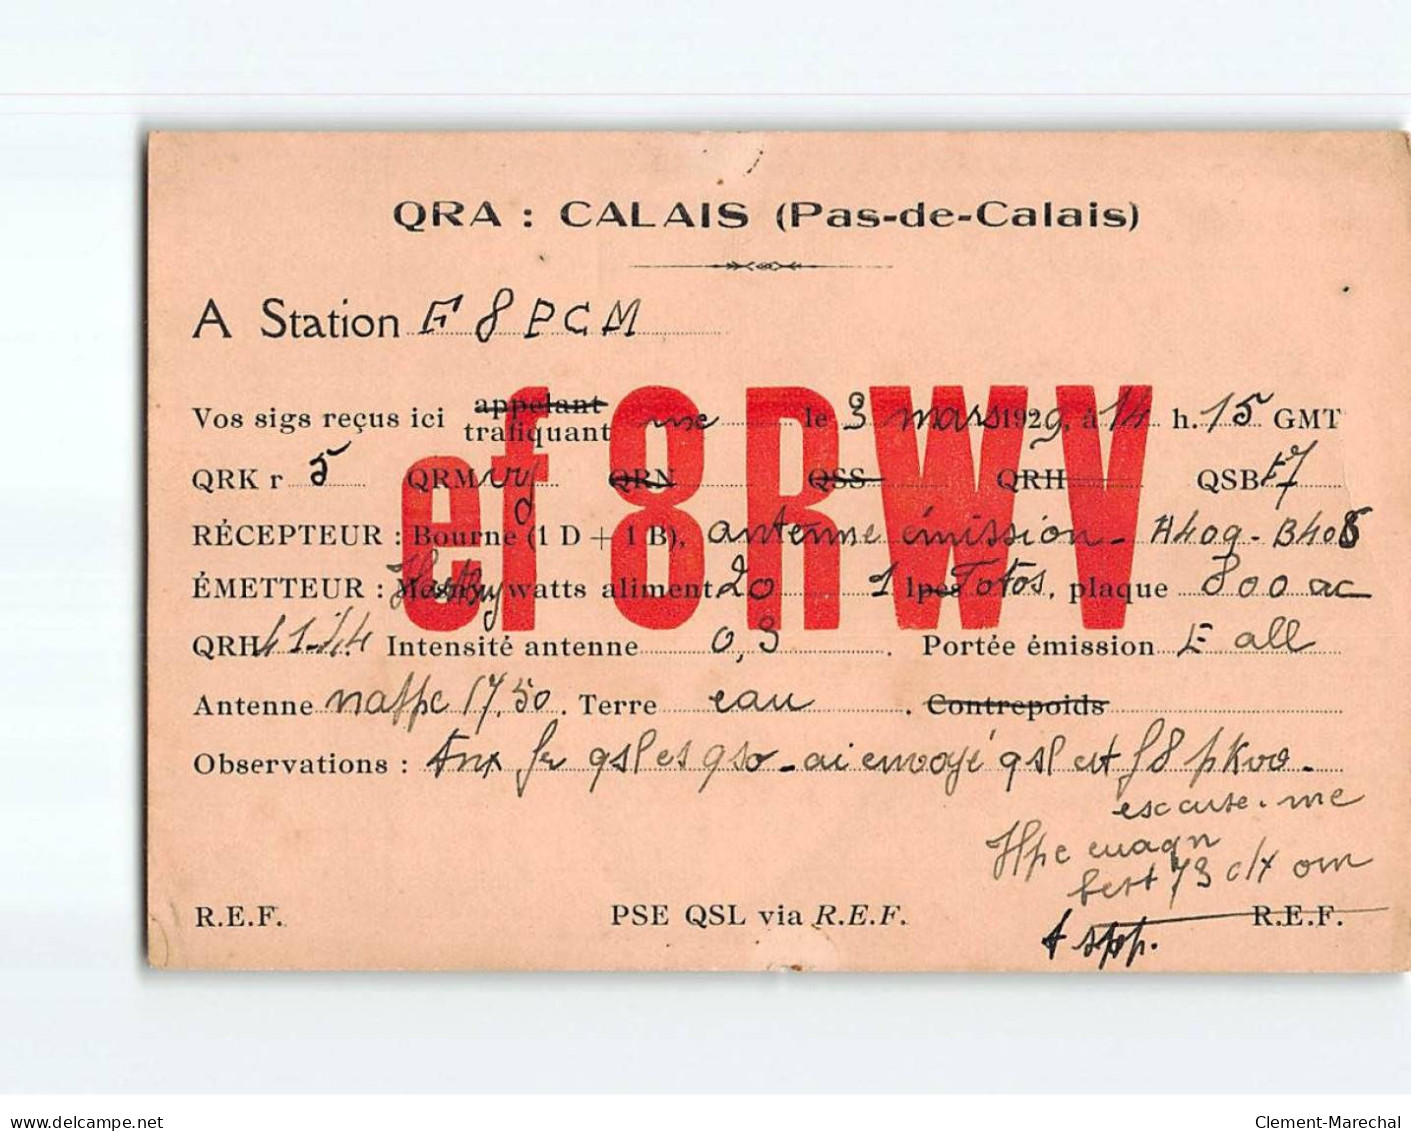 CALAIS : QRA, Message Pour Station F8PCM - état - Calais